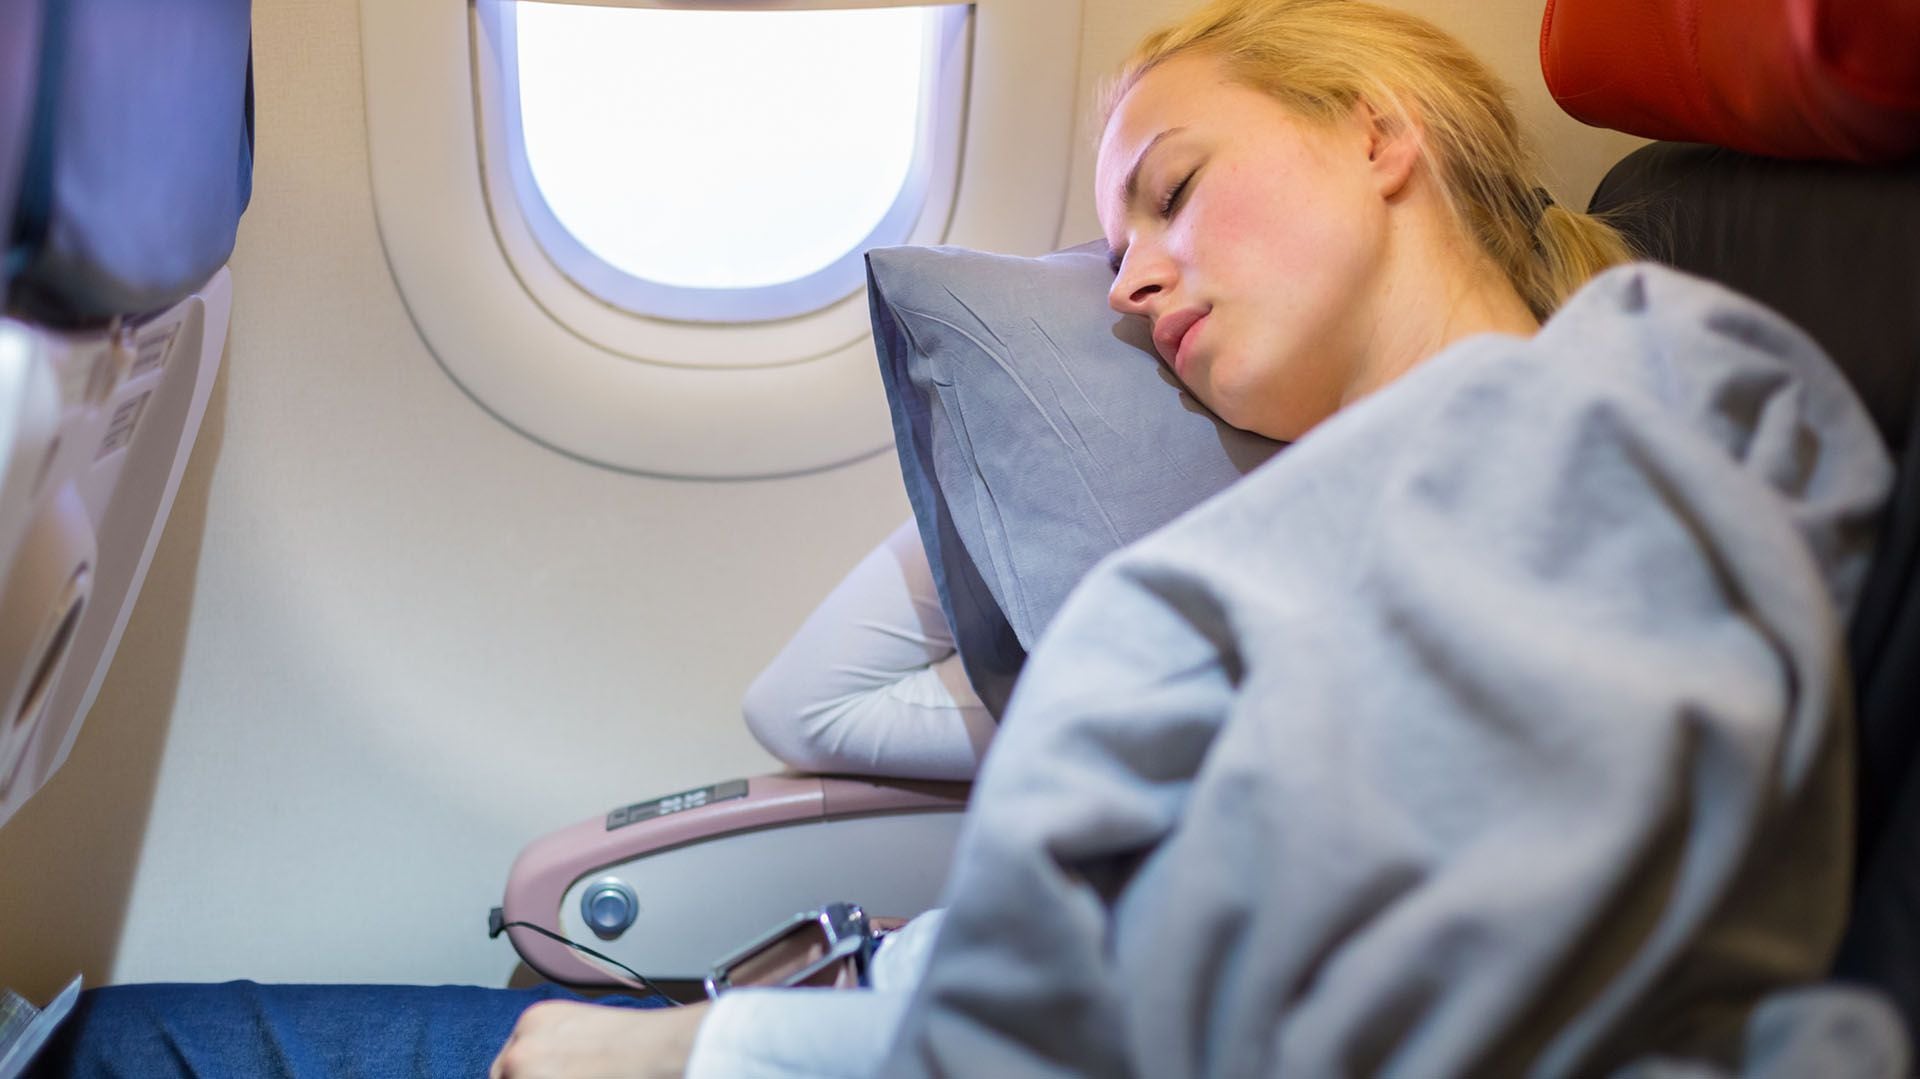 Los fármacos para dormir pueden jugar una mala pasada durante un viaje en avión (Getty)